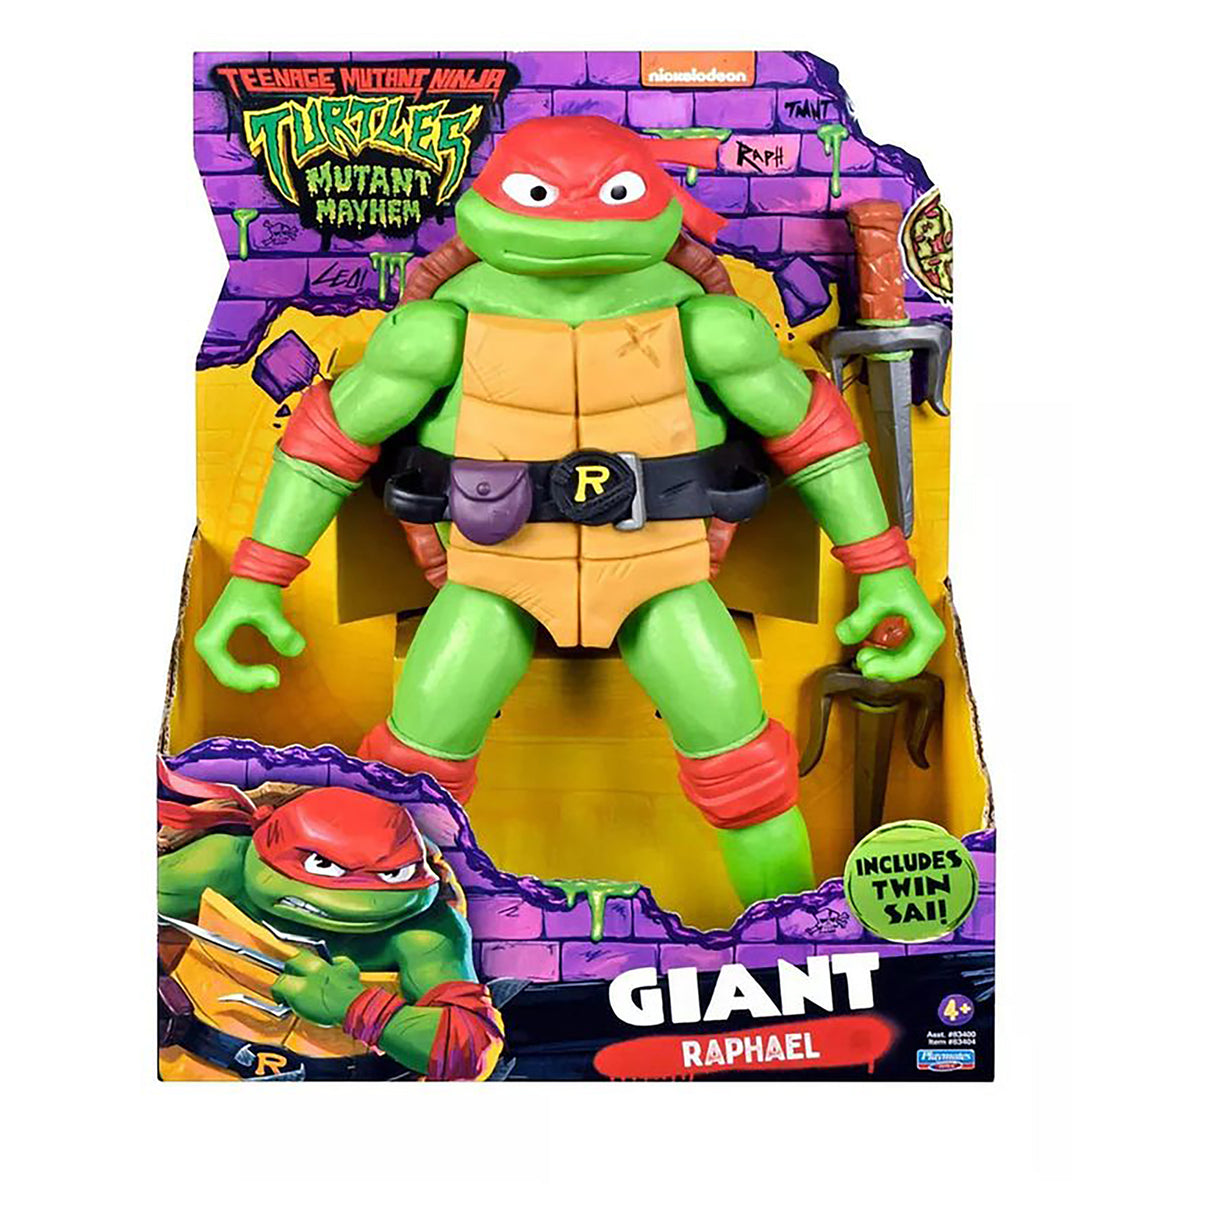 Teenage Mutant Ninja Turtles TMNT Movie Giant Figure - Raphael